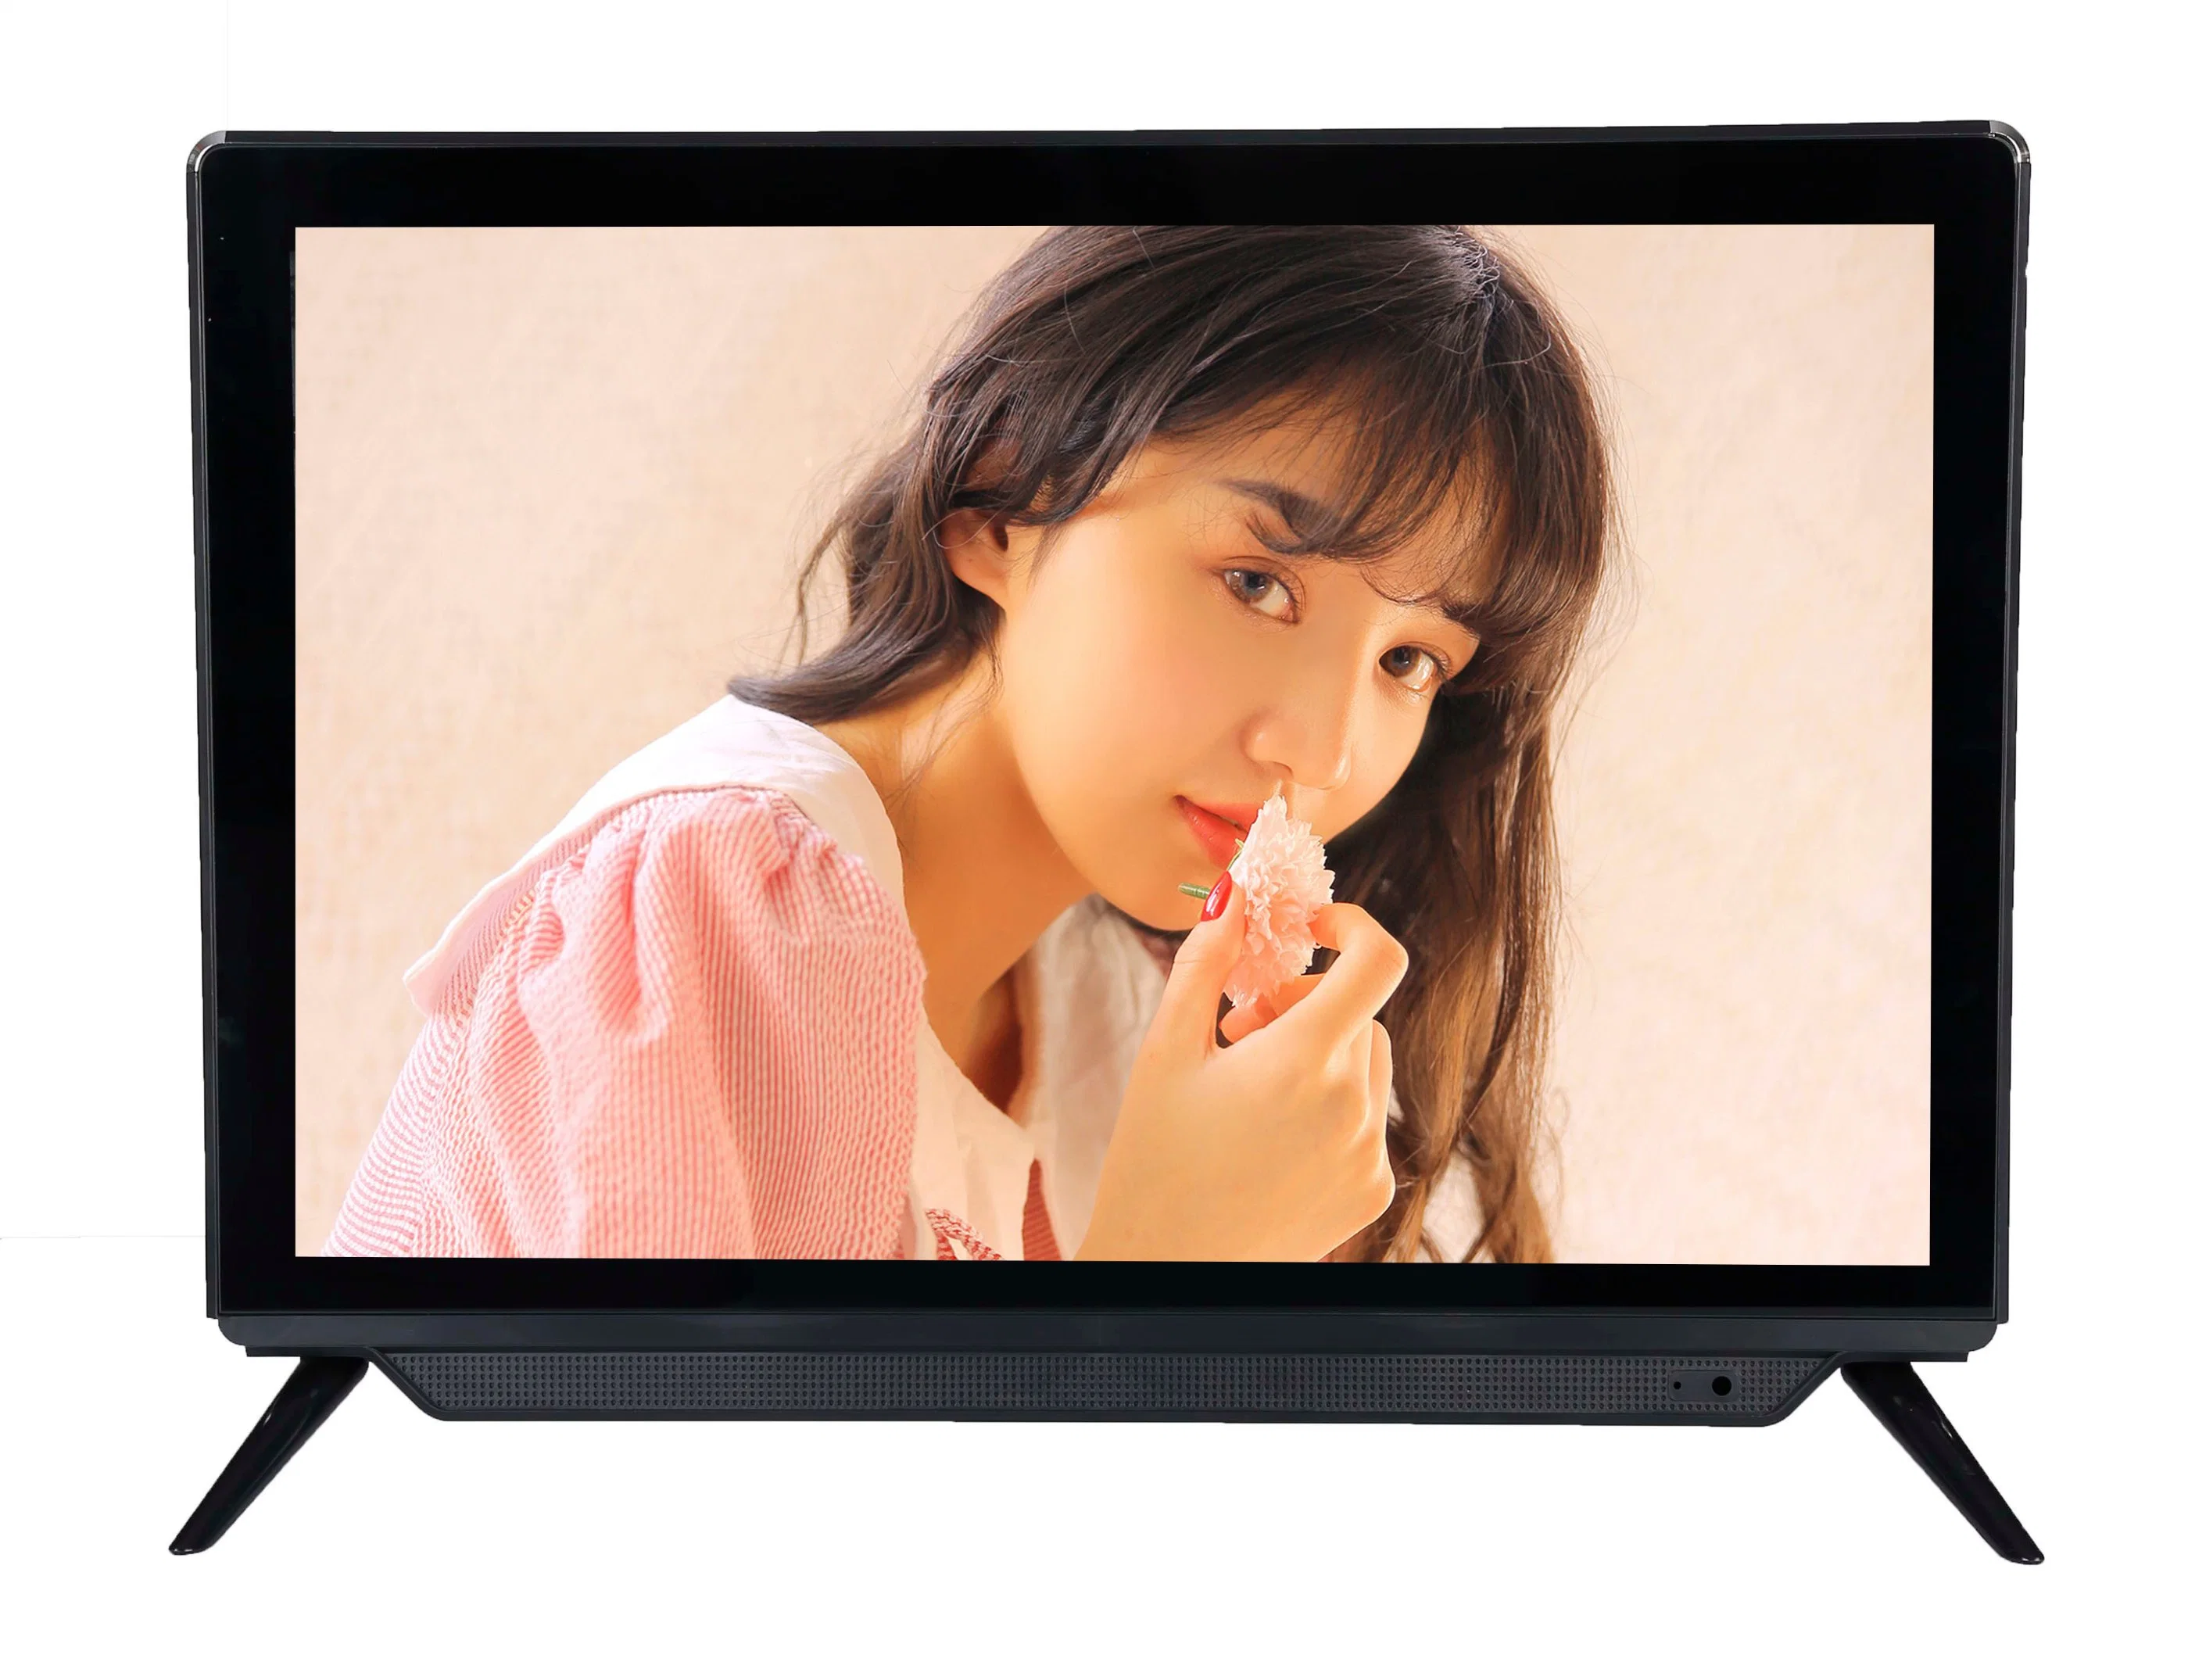 تلفزيون رقمي ملون 17 بوصة تلفزيون محمول 12 فولت تيار مستمر التلفاز